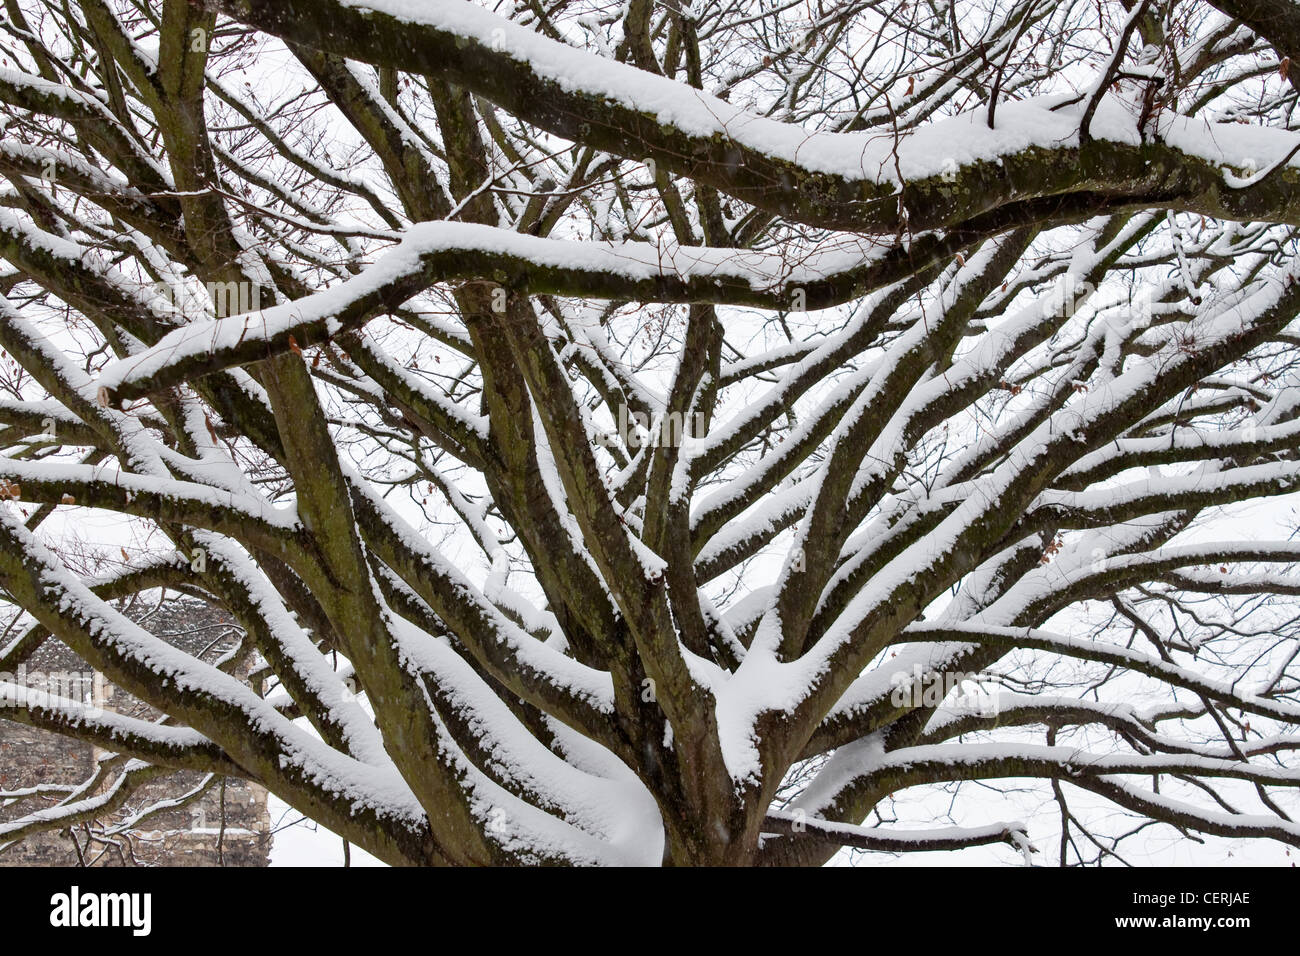 Las ramas de los árboles cubiertos de nieve profunda invierno diciembre Foto de stock